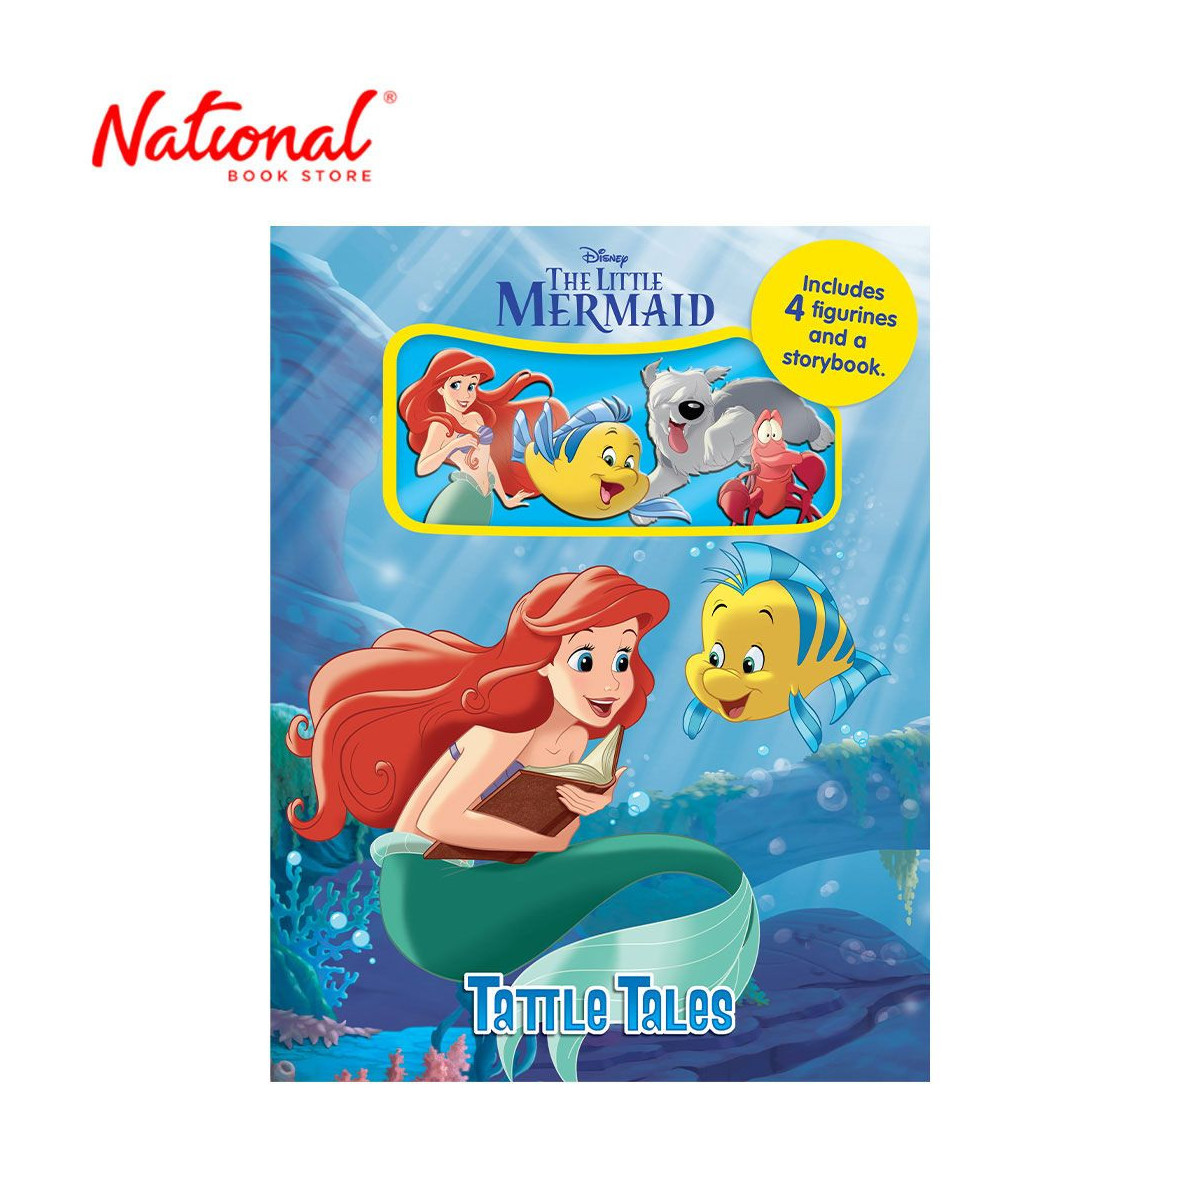 Disney The Little Mermaid Tattle Tales - Board Book for Kids